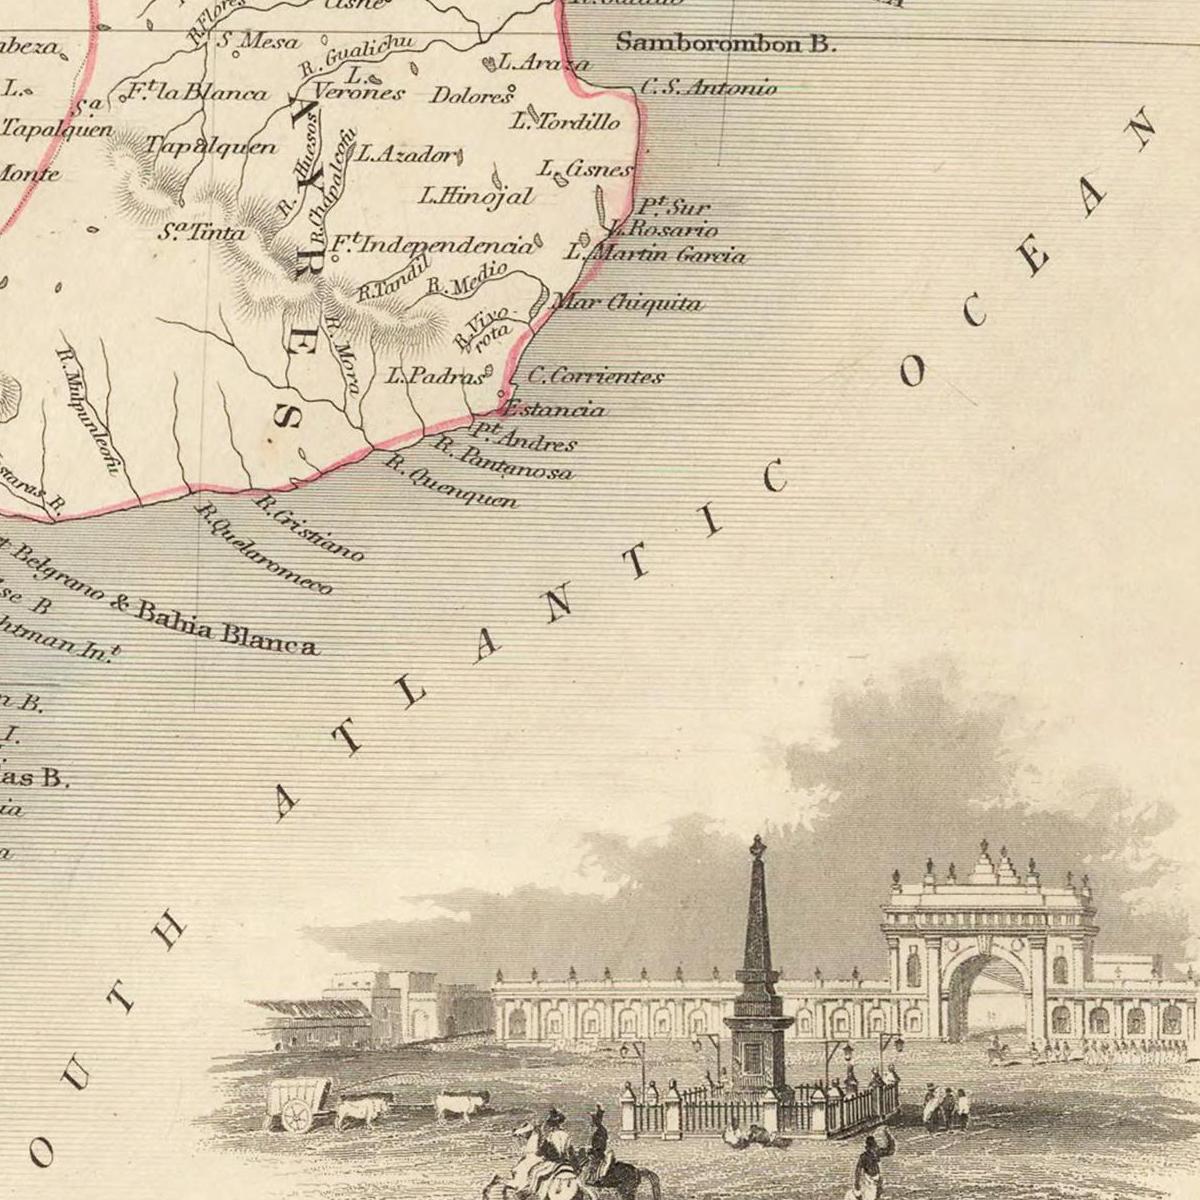 Historische Landkarte Argentinien & Chile um 1850